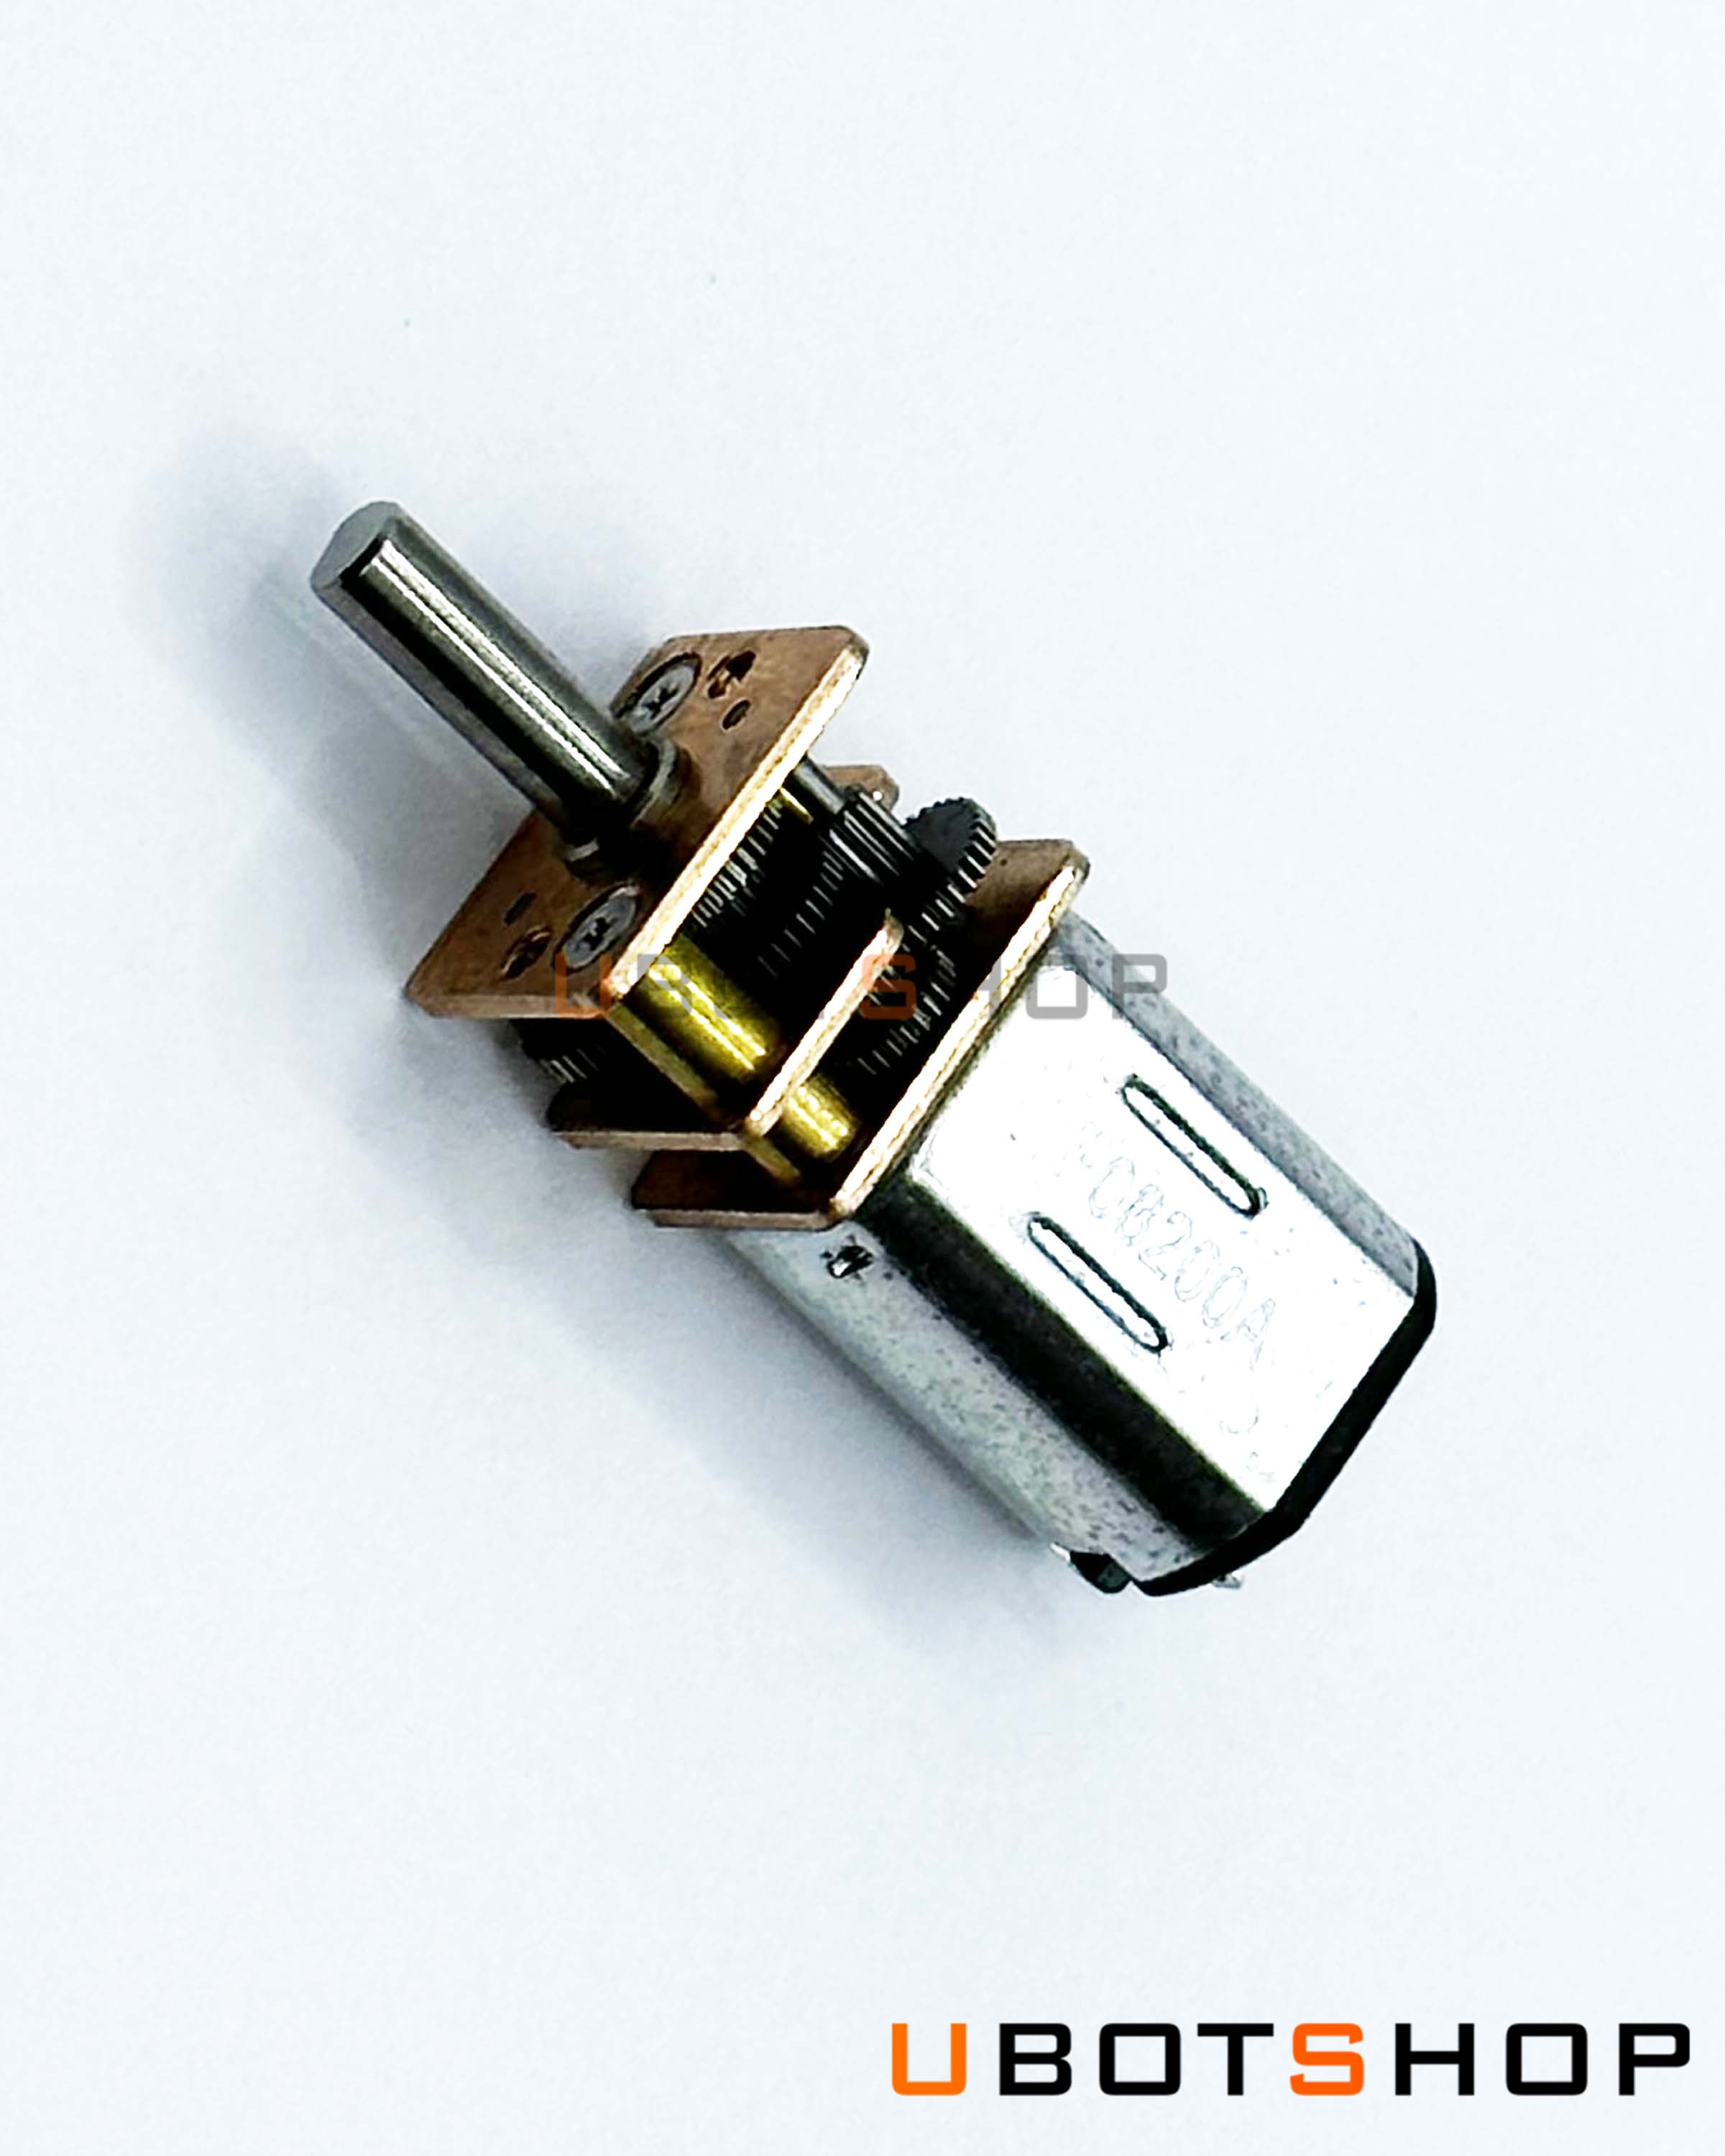 N20 gear motor(MM0007)